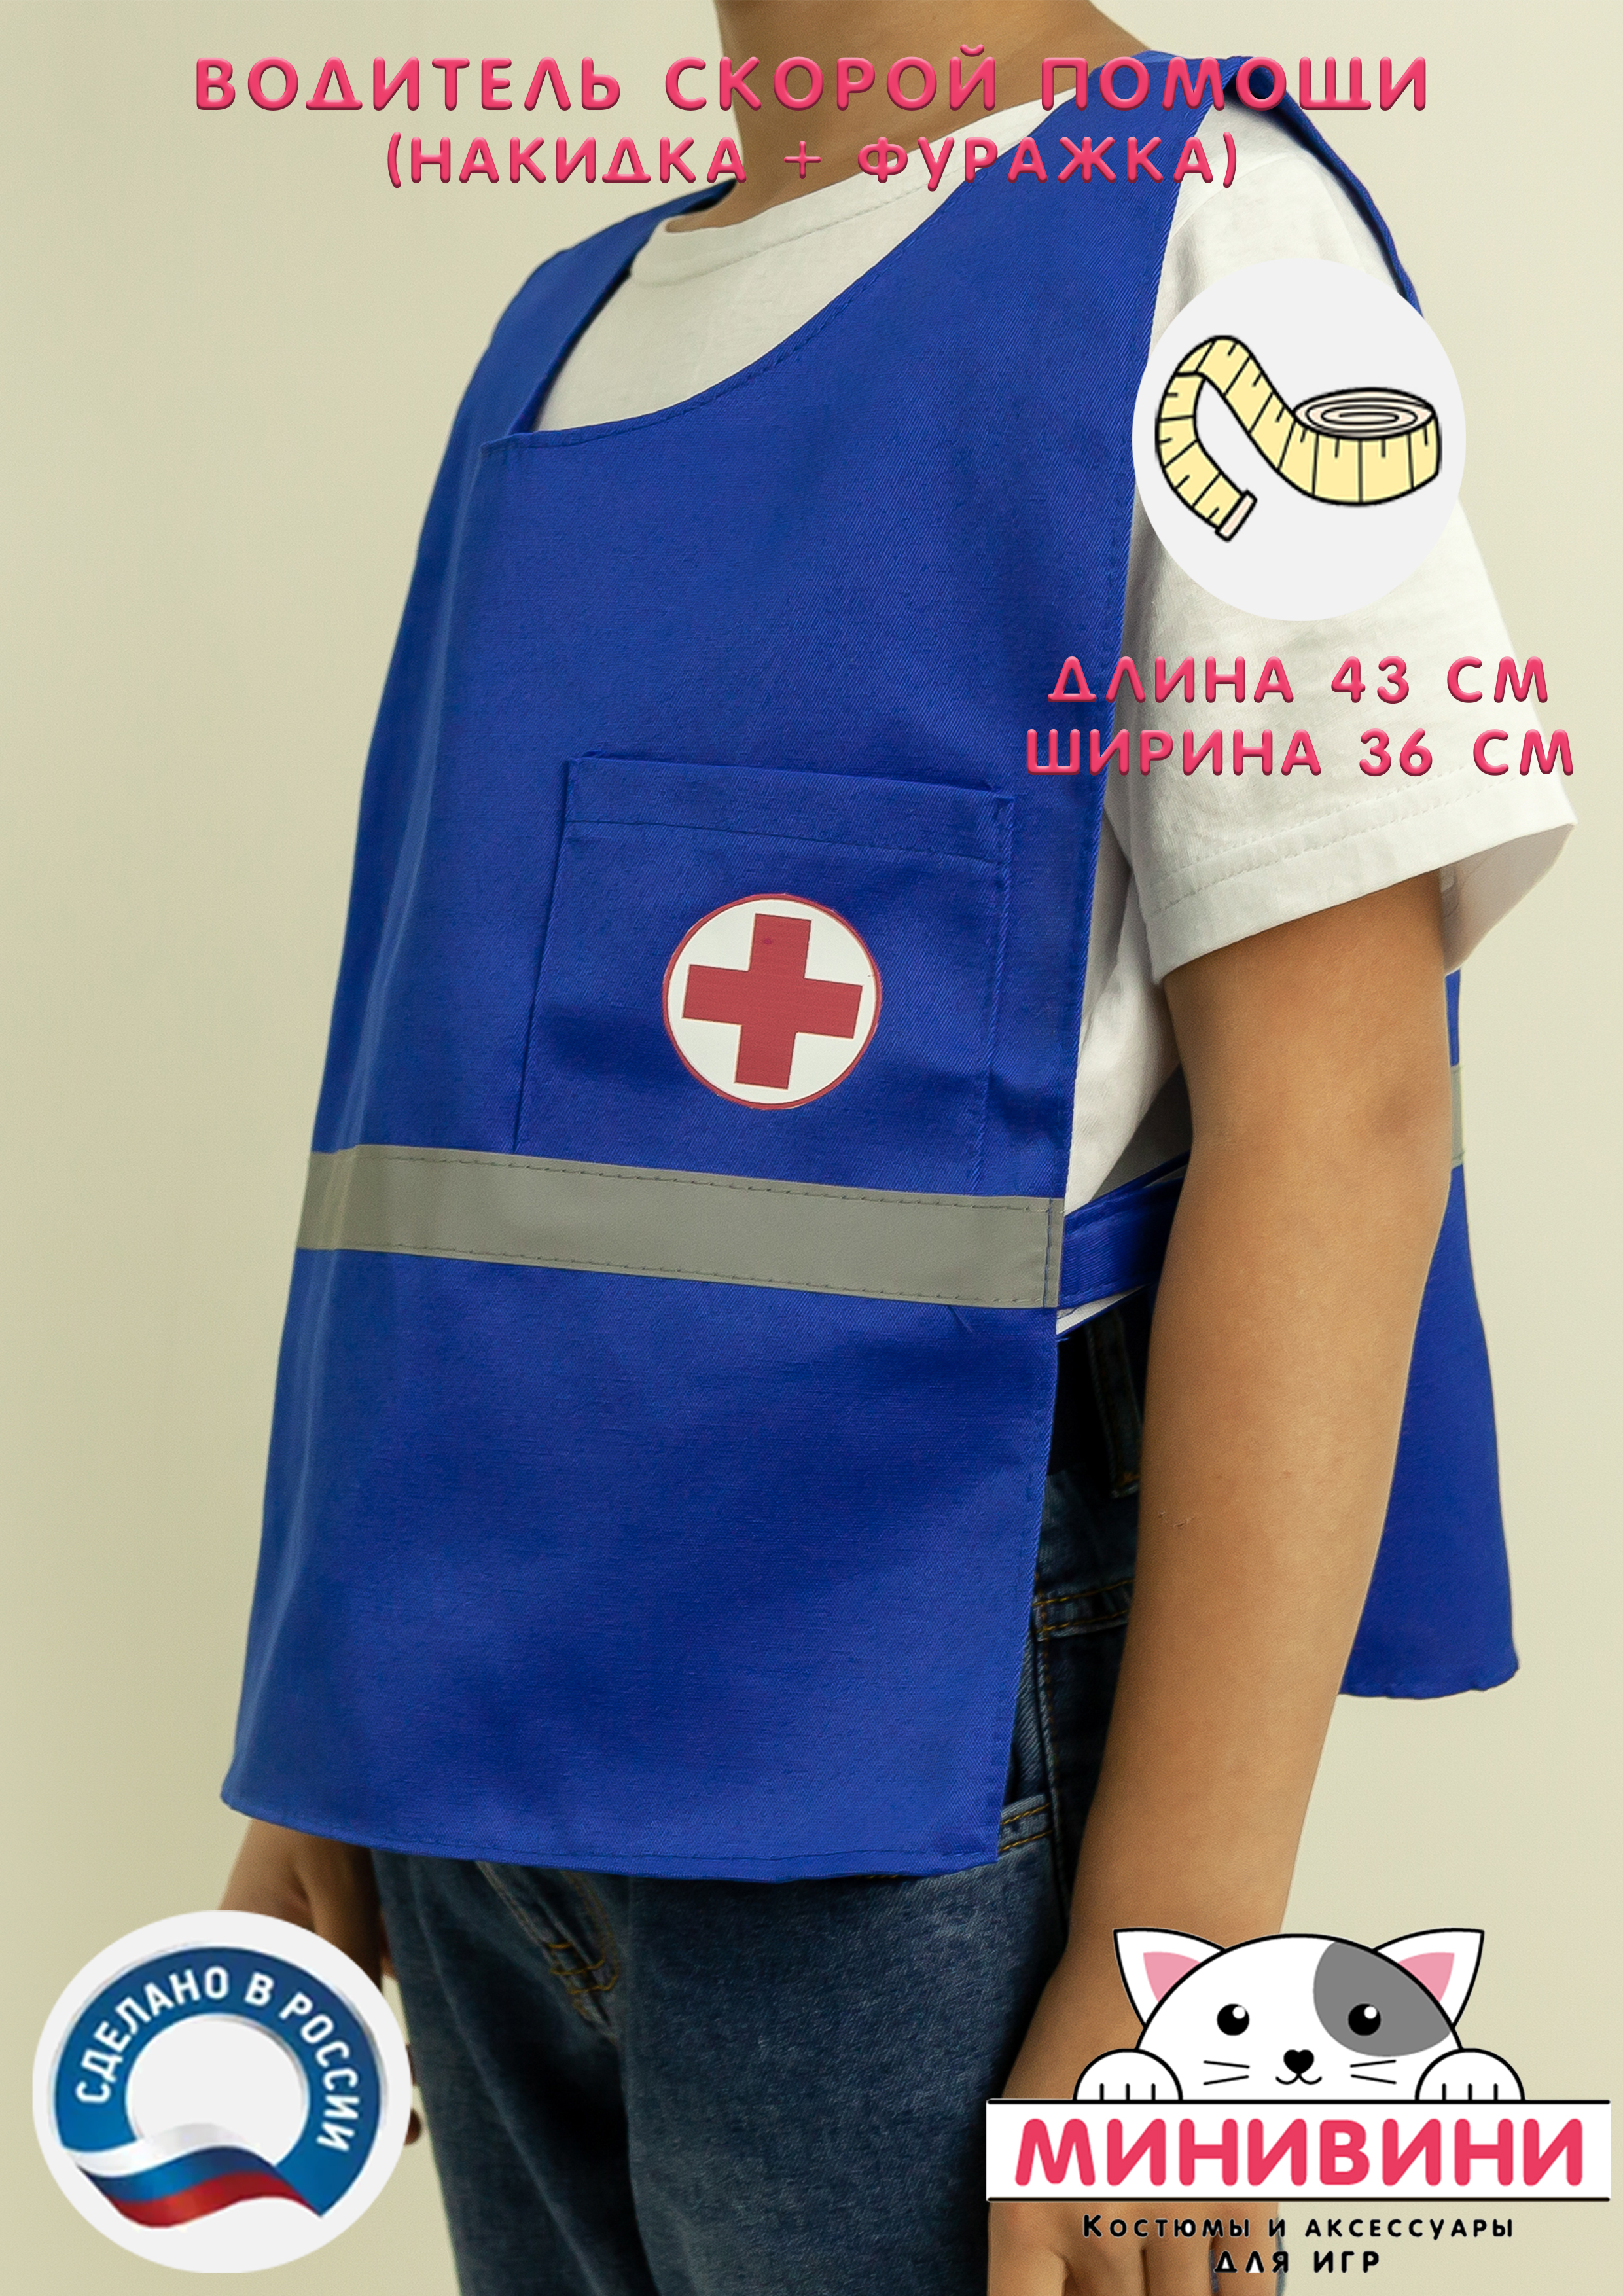 Водитель скорой помощи (накидка + фуражка)